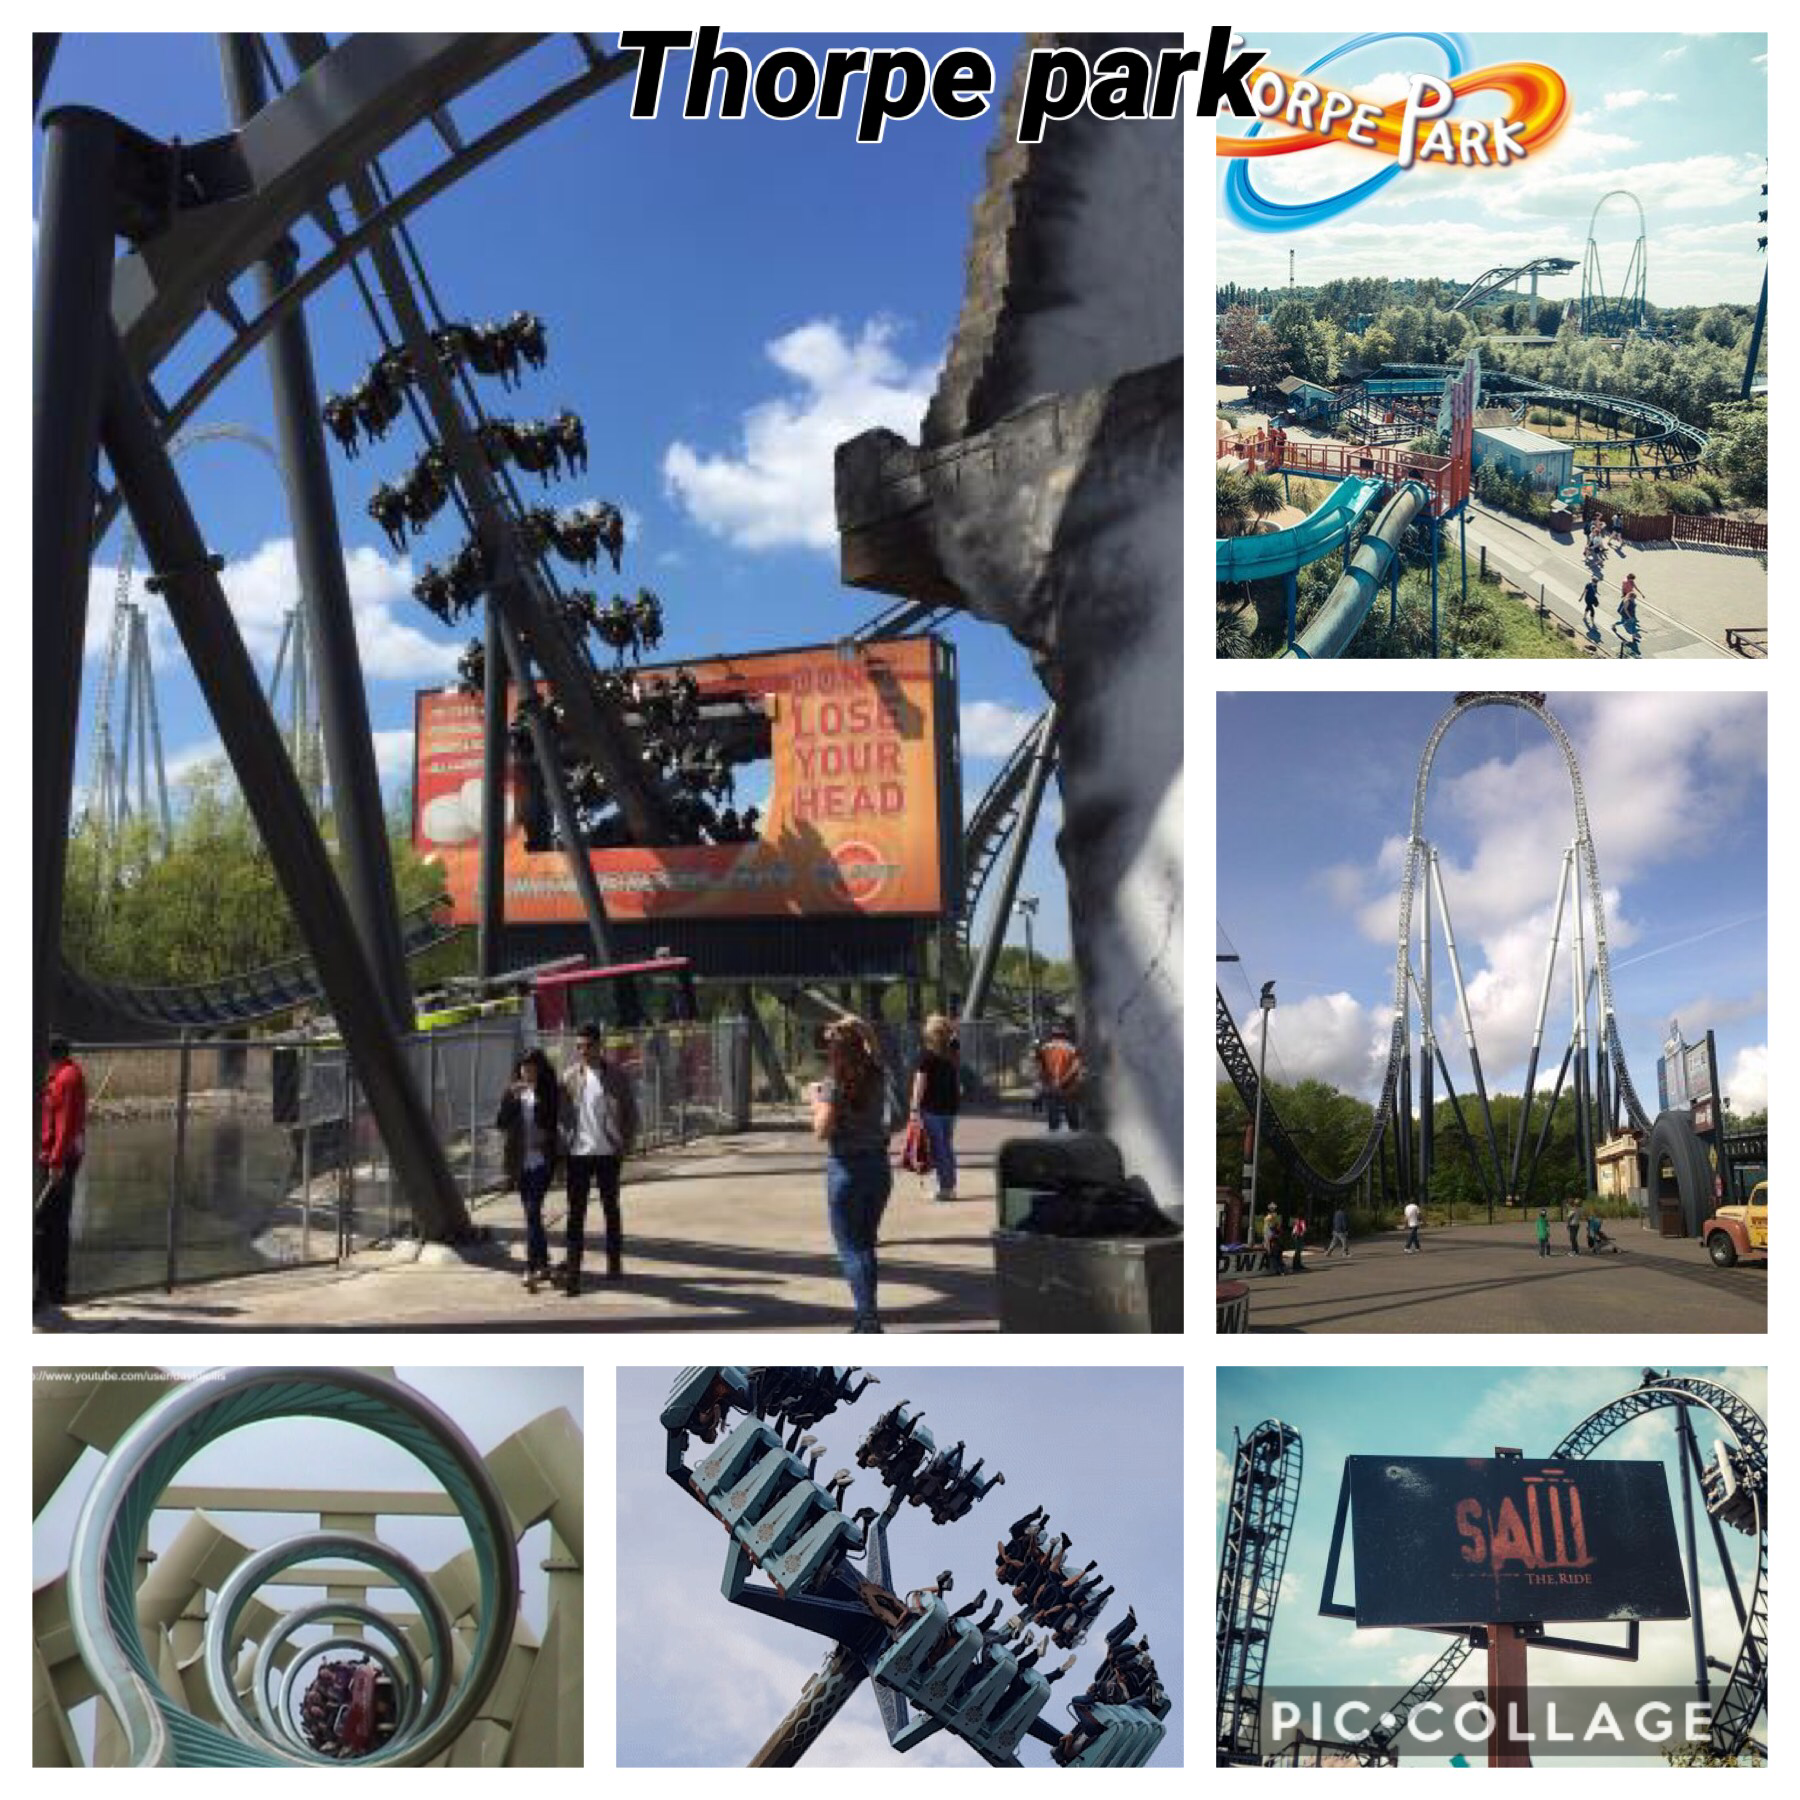 Thorpe park